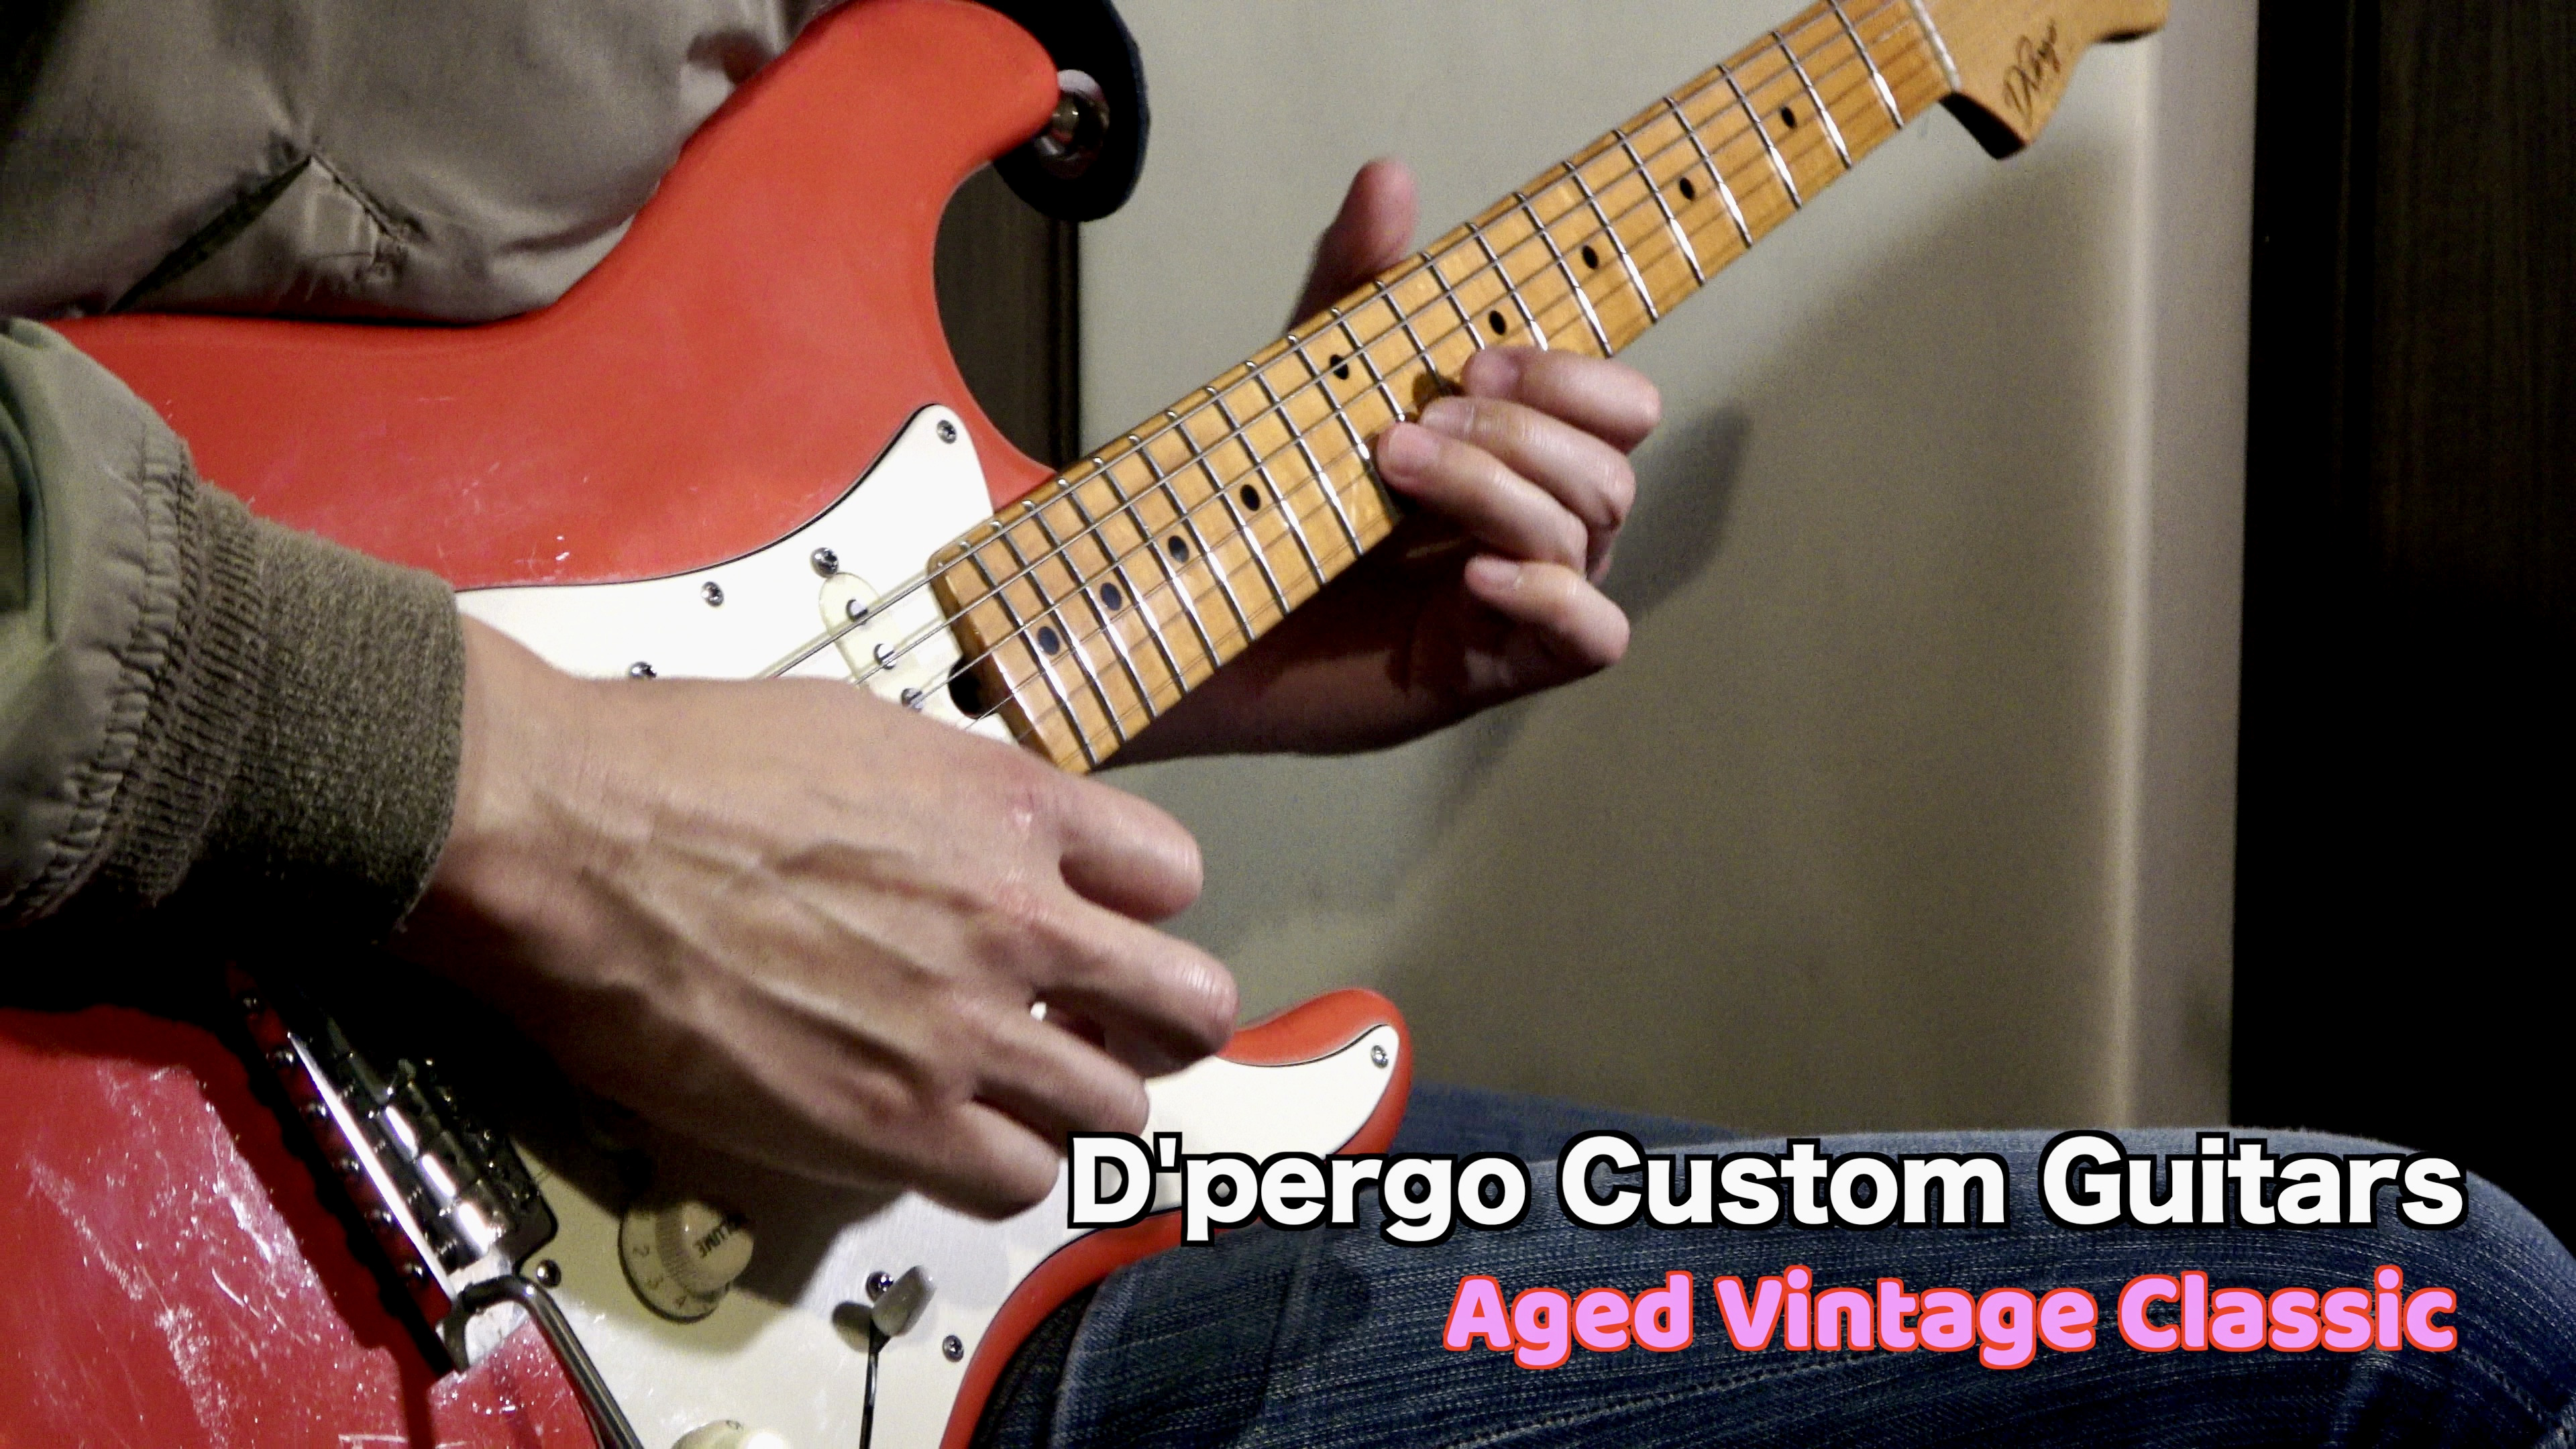 D'Pergo Custom Guitars Aged Vintage Classic